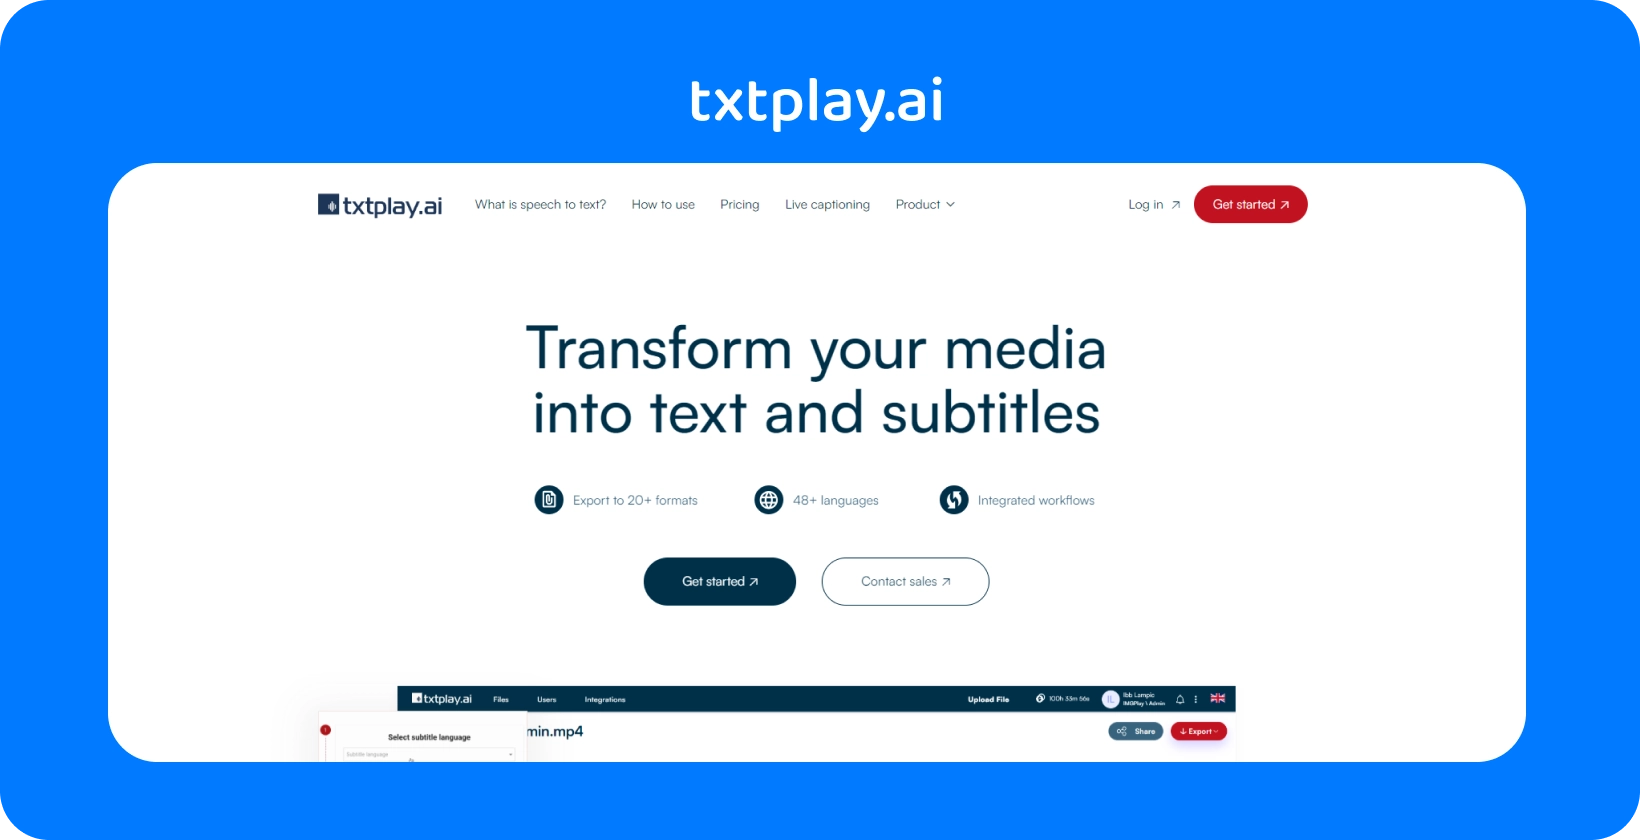 Paverskite mediją tekstu ir subtitrais naudodami txtplay.ai, palaikydami 48+ kalbas ir 20+ formatus.